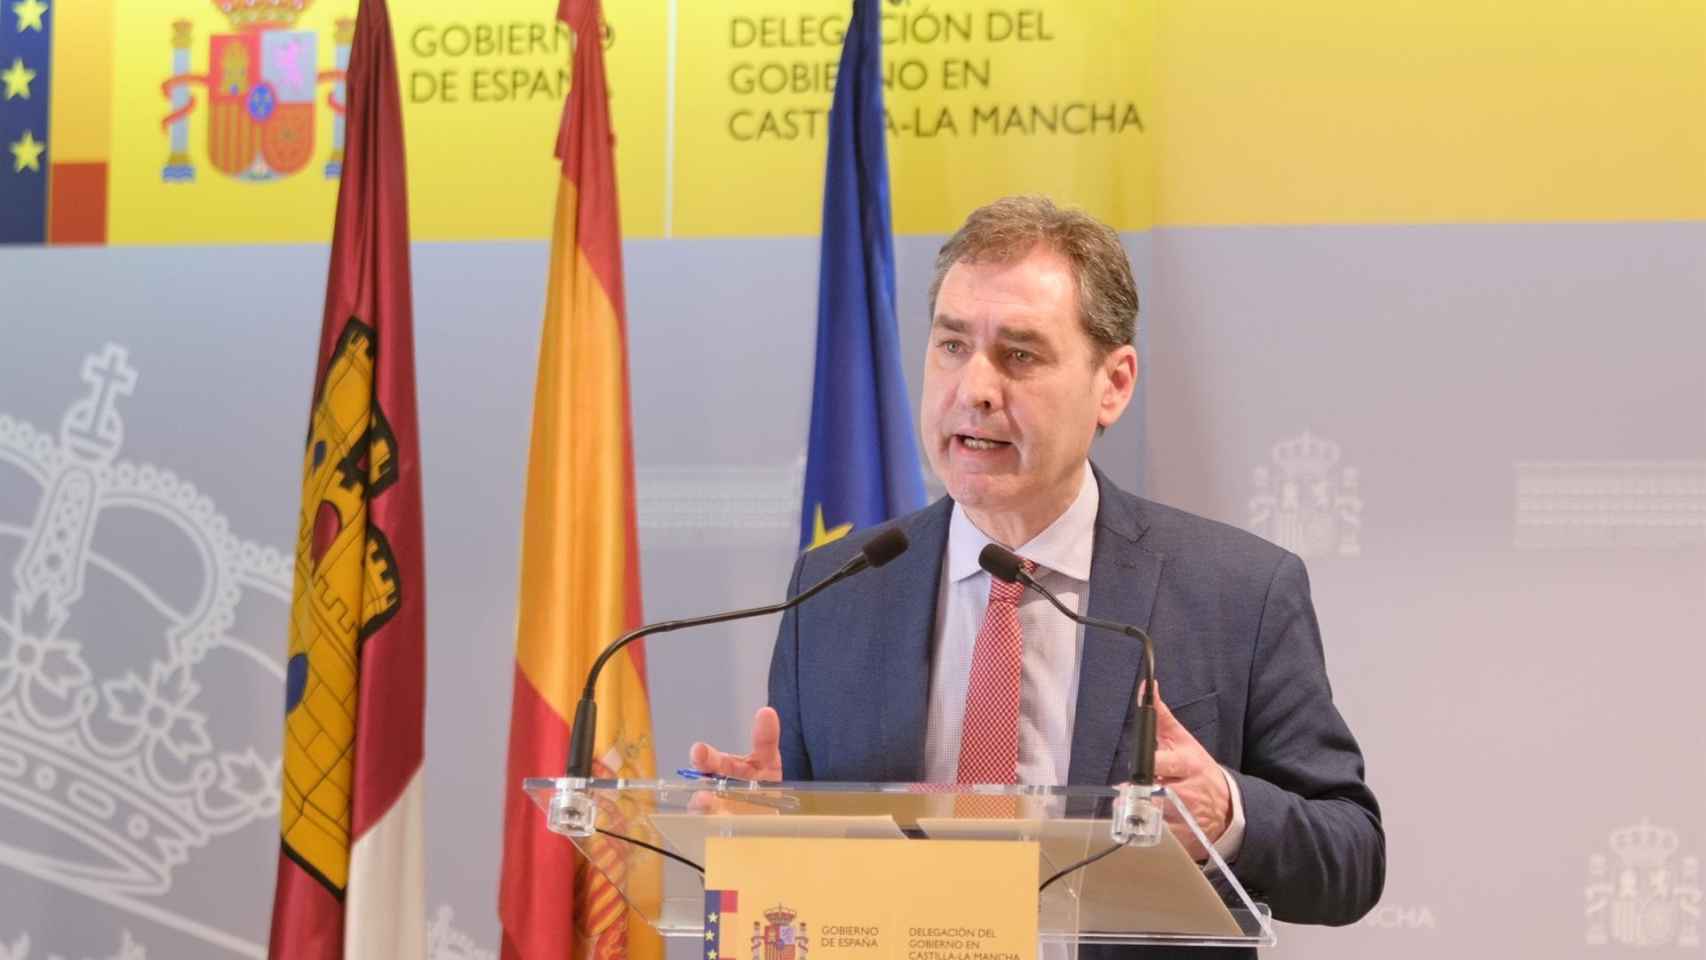 Francisco Tierraseca, delegado del Gobierno de España en Castilla-La Mancha.